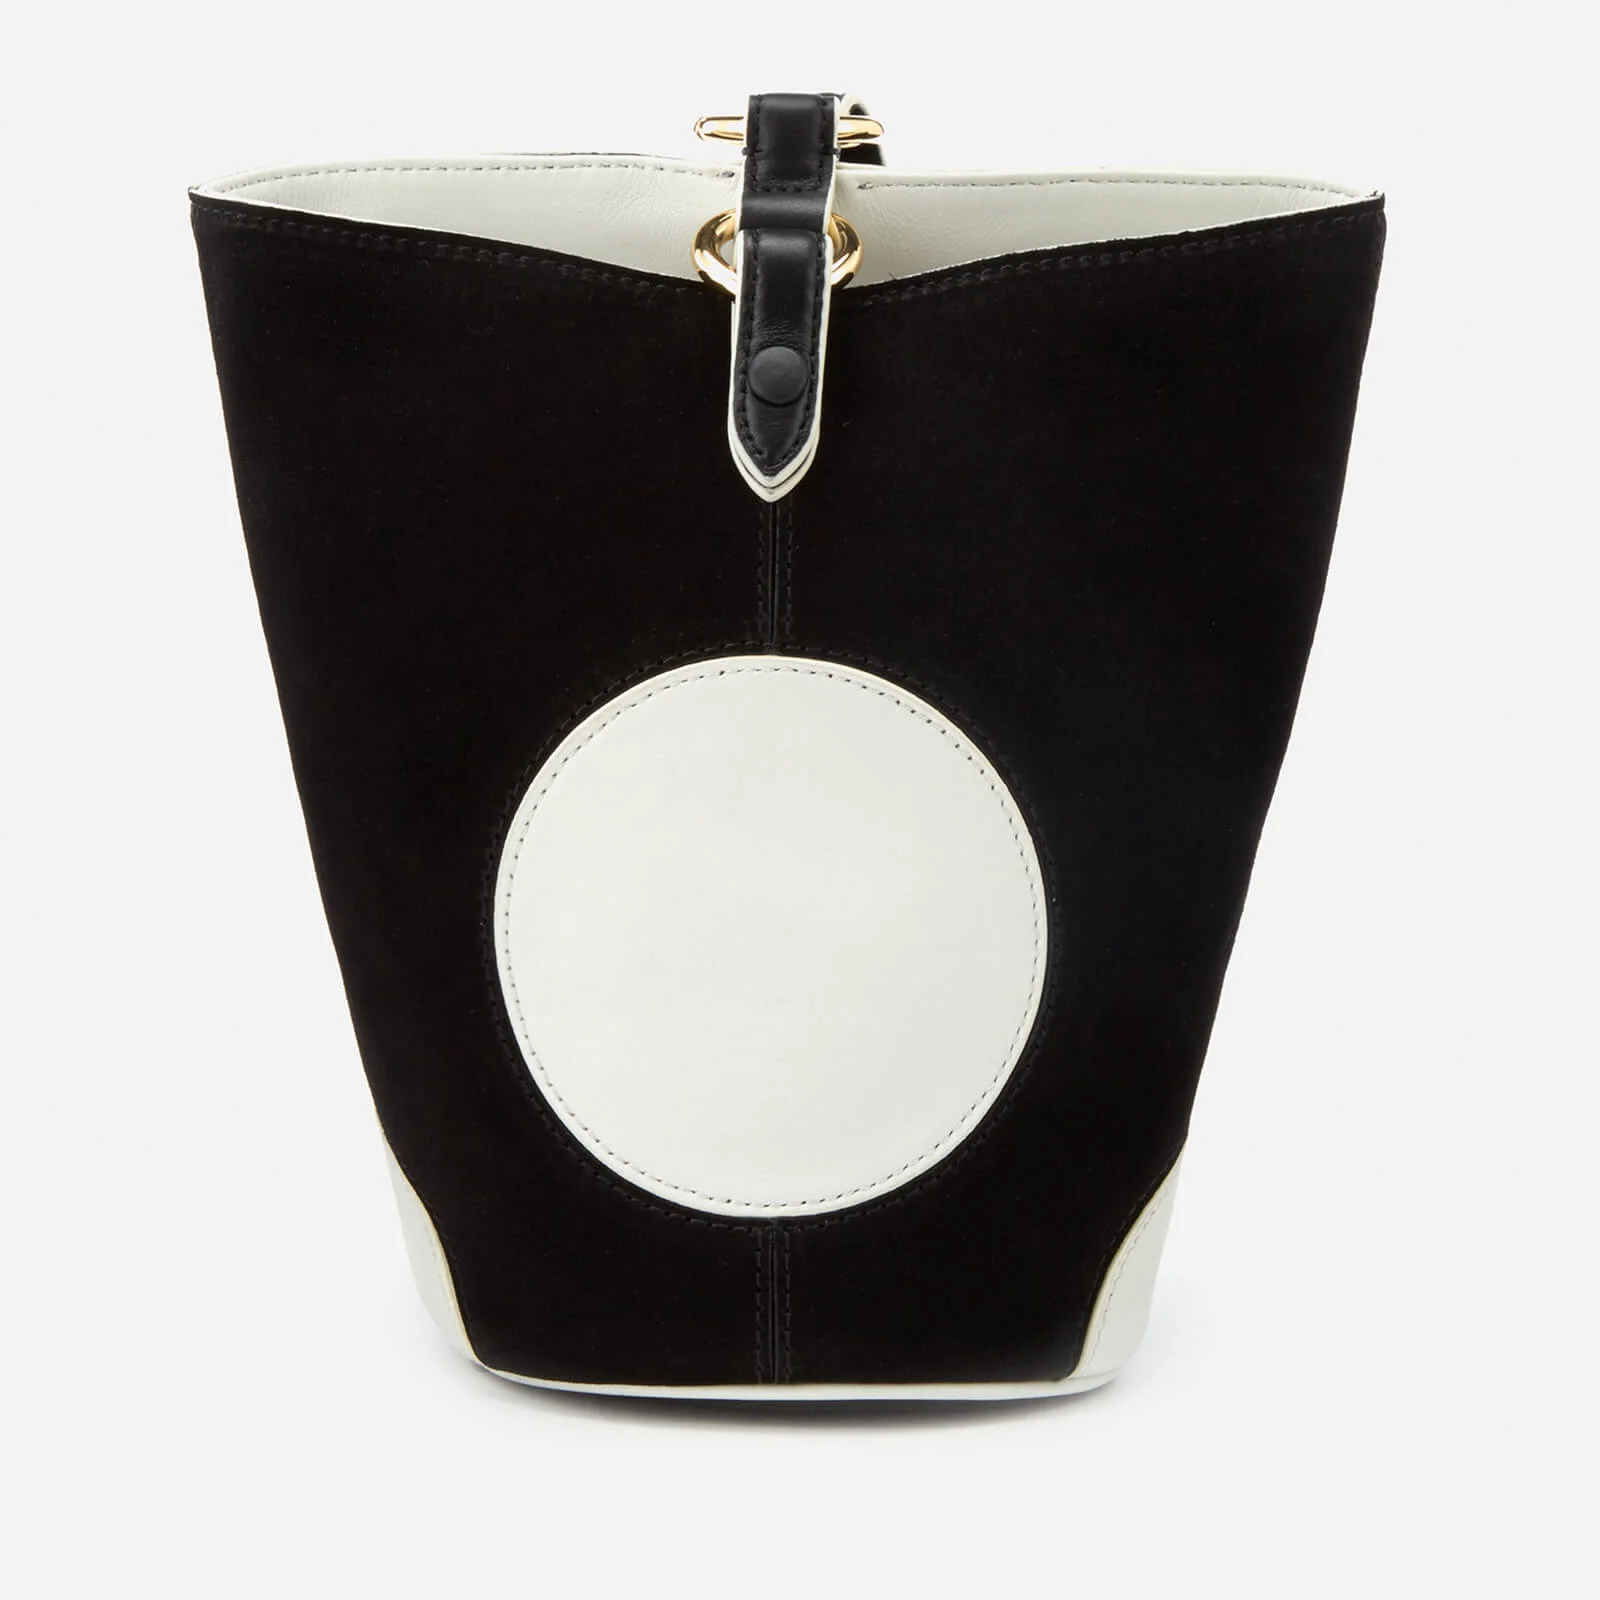 Diane von Furstenberg Women's Mini Steamer Bag - Black/Ivory Image 1